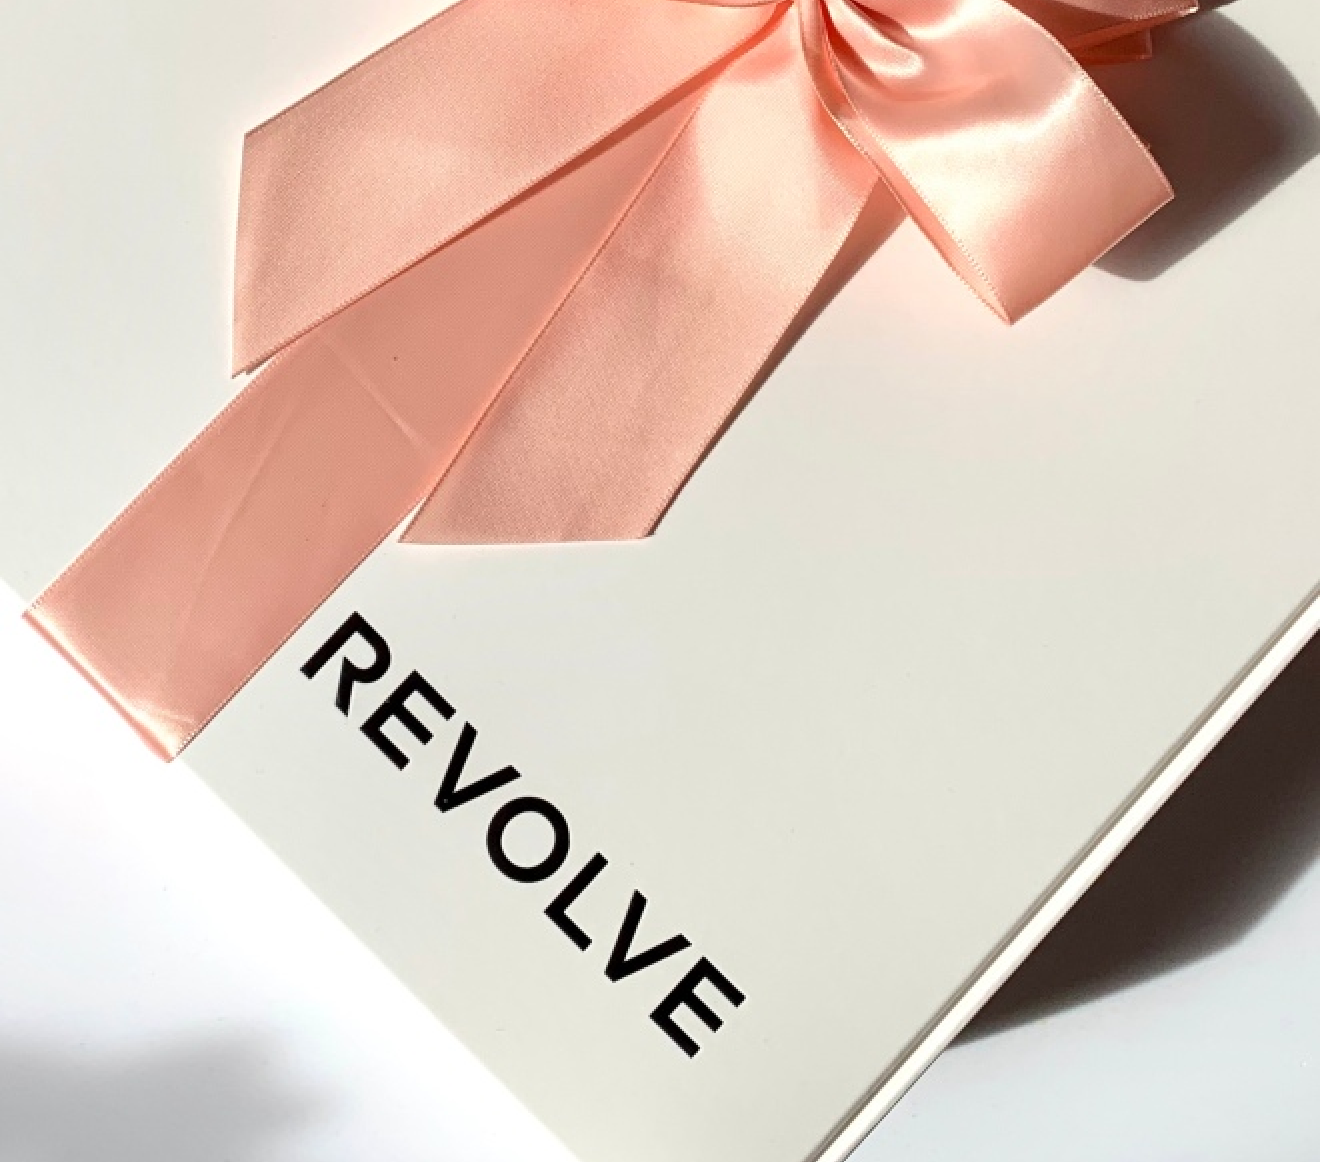 revolve gift certificate